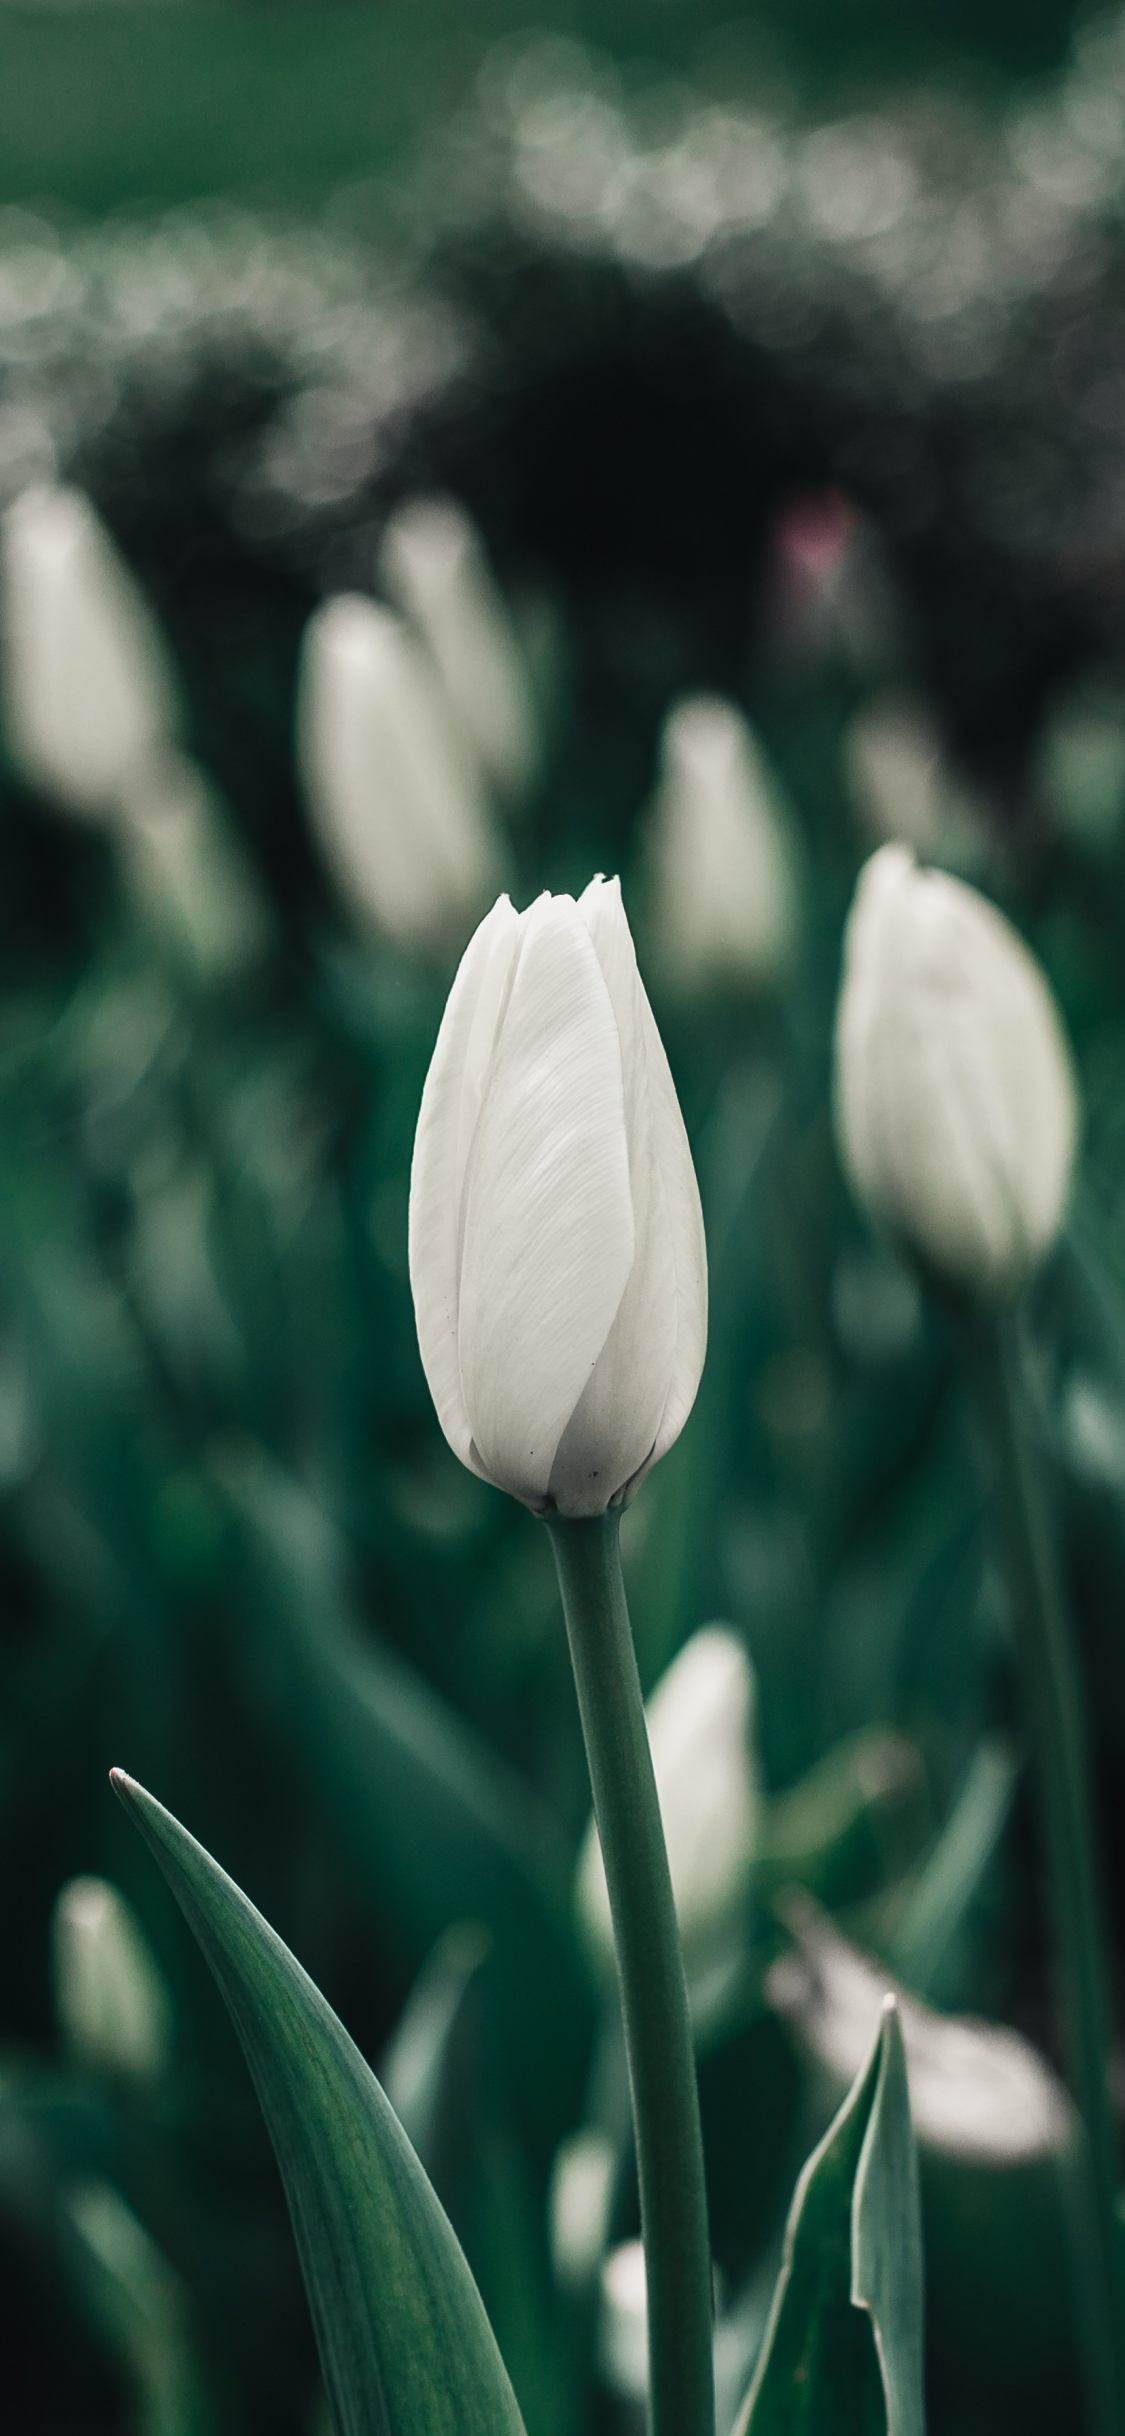 Hoa tulip trắng luôn tỏa sáng và ấm áp trong ngày đông lạnh giá. Là một biểu tượng của tình yêu và sự hoàn hảo, những bông hoa tulip trắng sẽ mang lại cảm giác tươi mới và lạc quan cho ngày mới của bạn. Hãy xem qua bức ảnh về hoa tulip trắng để cảm nhận điều đó.